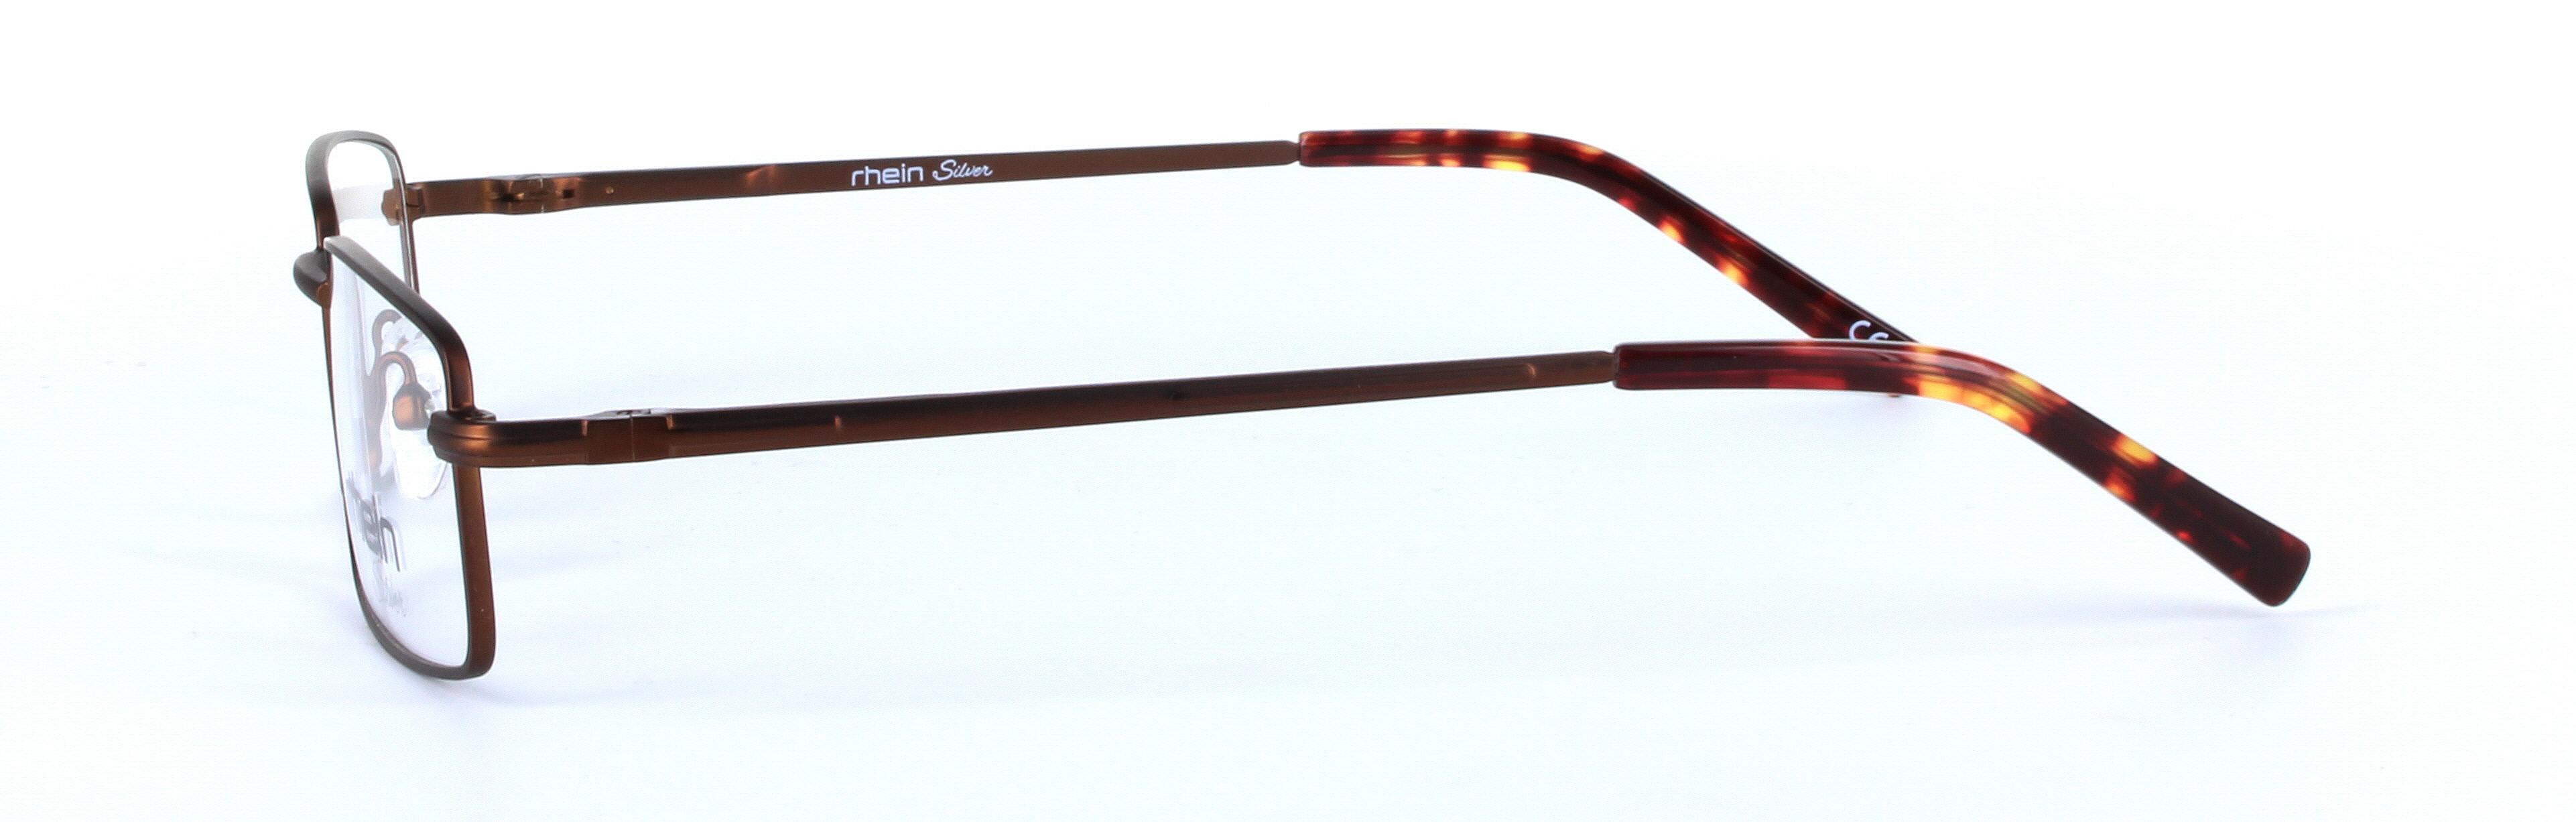 Antares Bronze Full Rim Aviator Metal Glasses - Image View 2